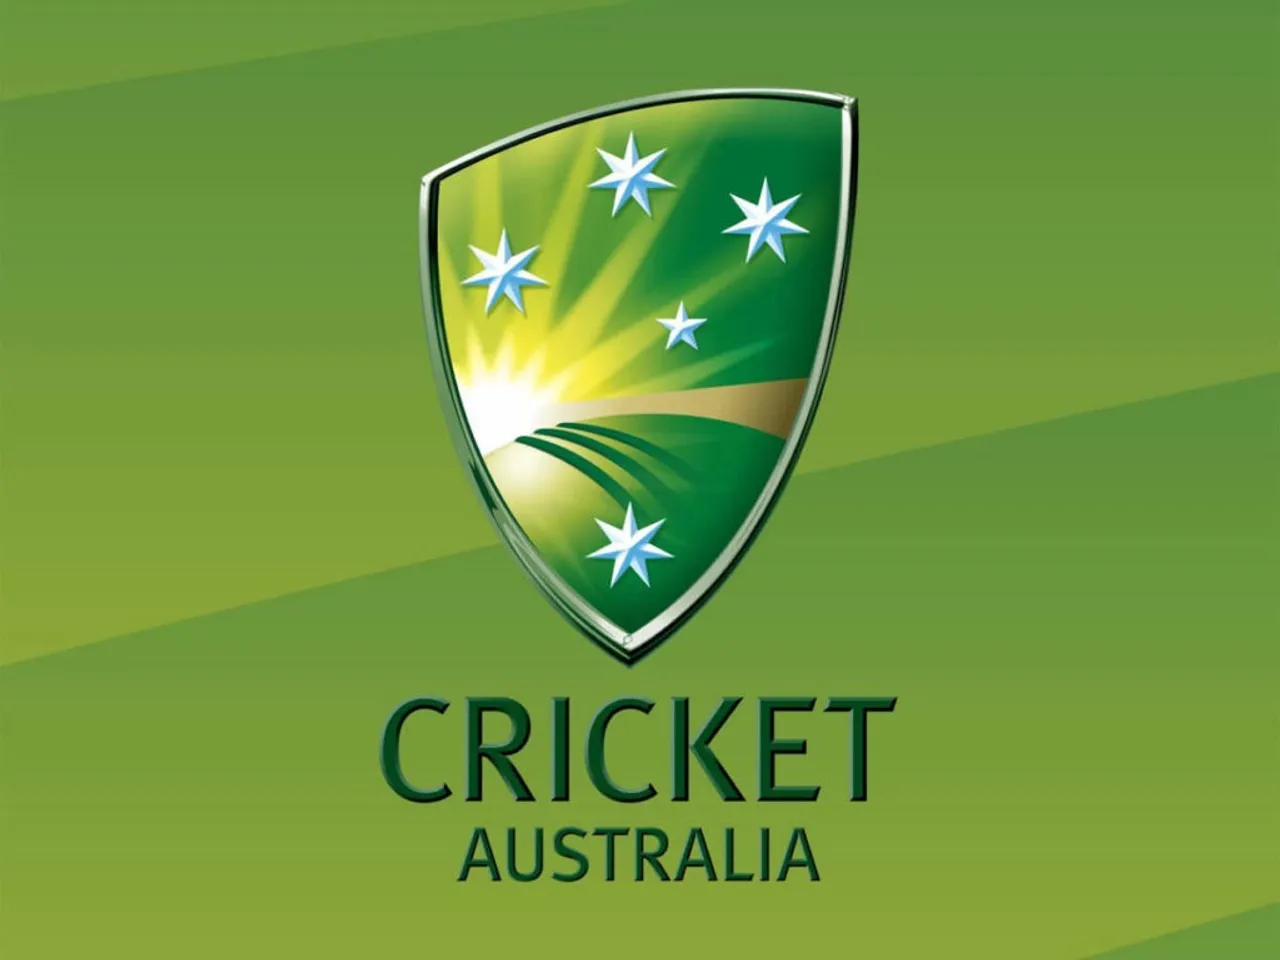 Cricket Australia announces dates for India’s tour to Australia starting October